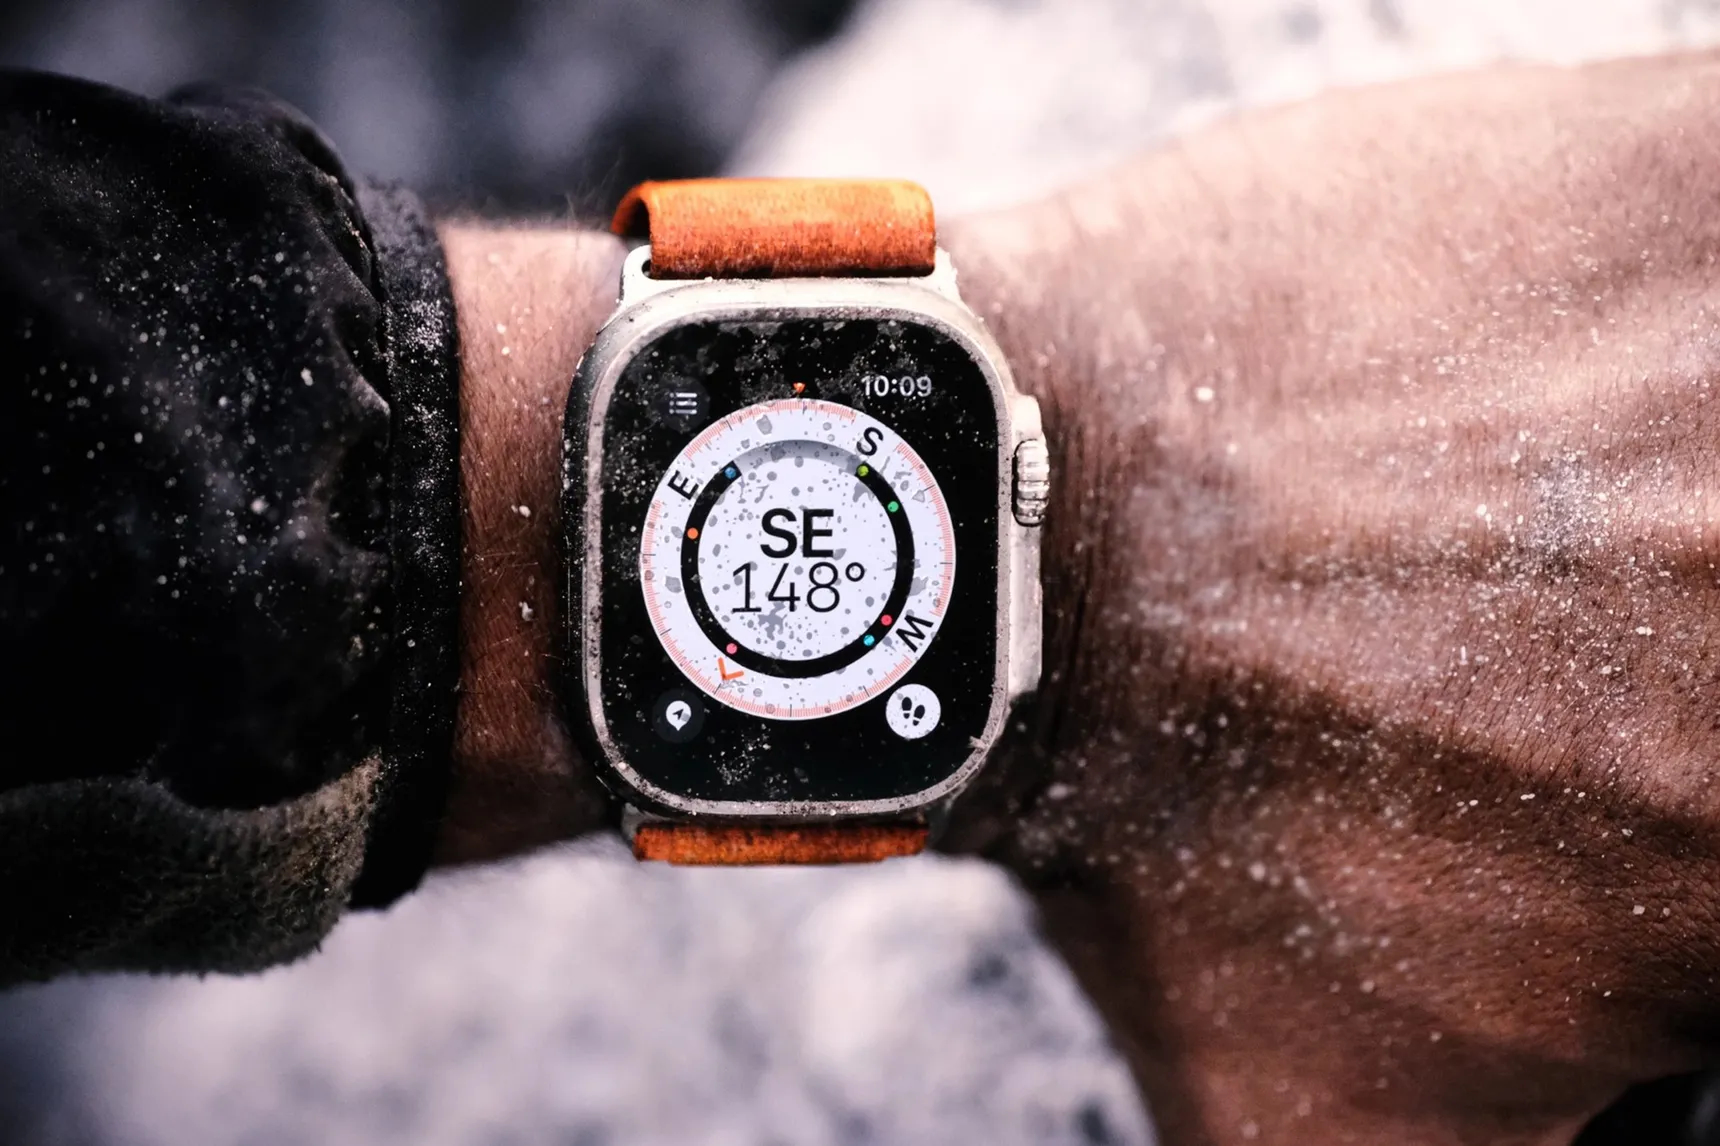 Apple Watch Ultra chính thức xuất hiện: Phiên bản đồng hồ cao cấp nhất Apple từng ra mắt! - Ảnh 7.